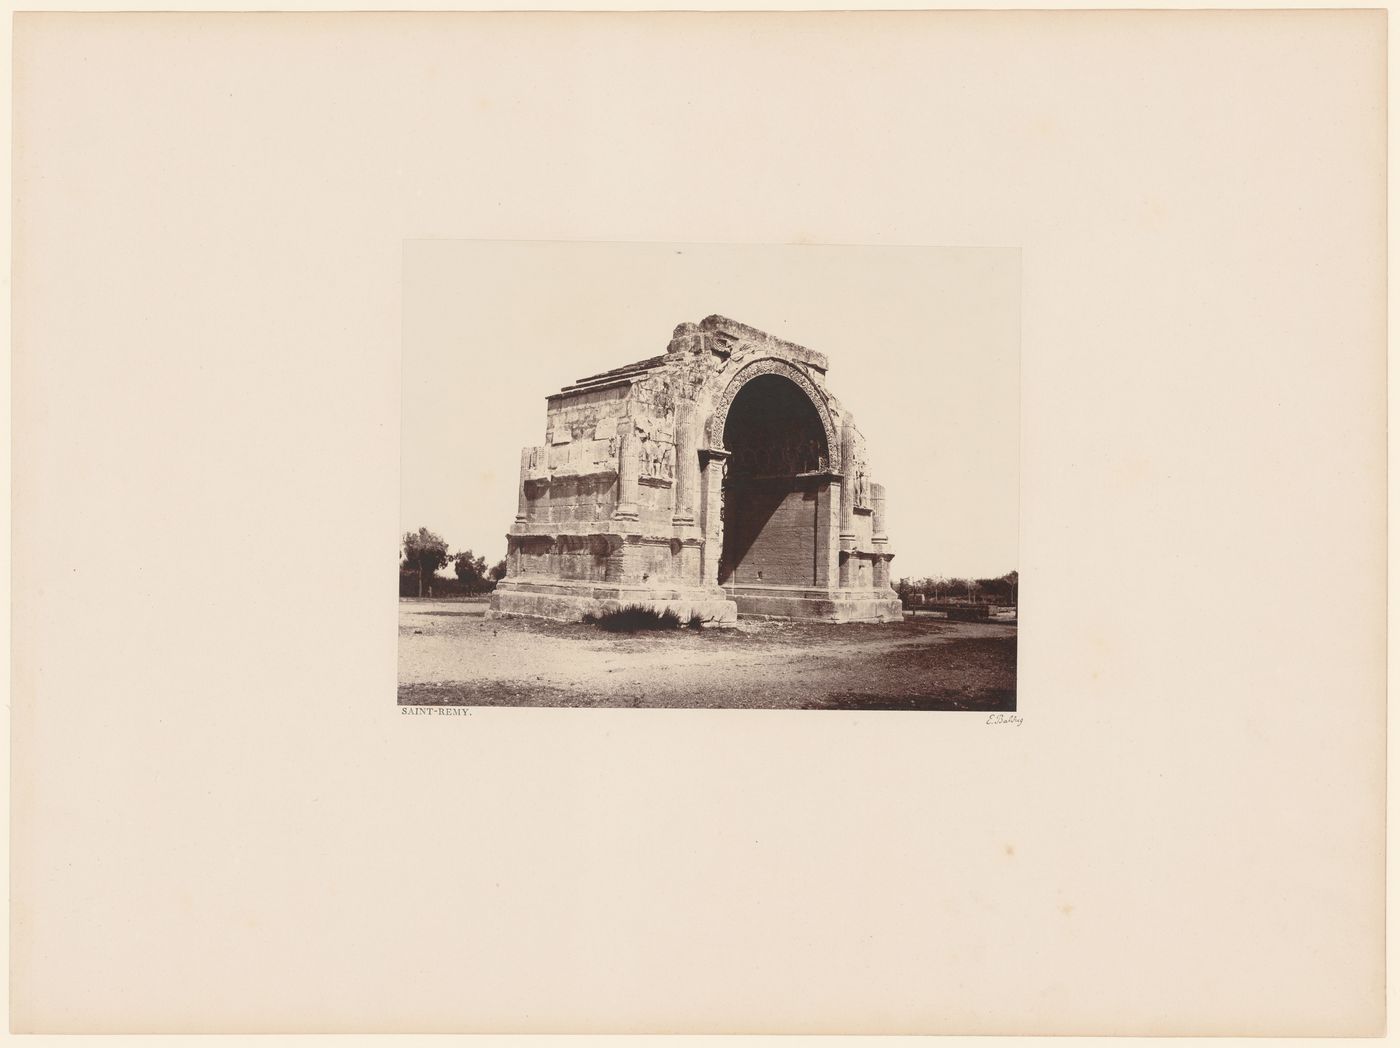 Triumphal arch, Saint-Rémy-de-Provence, France